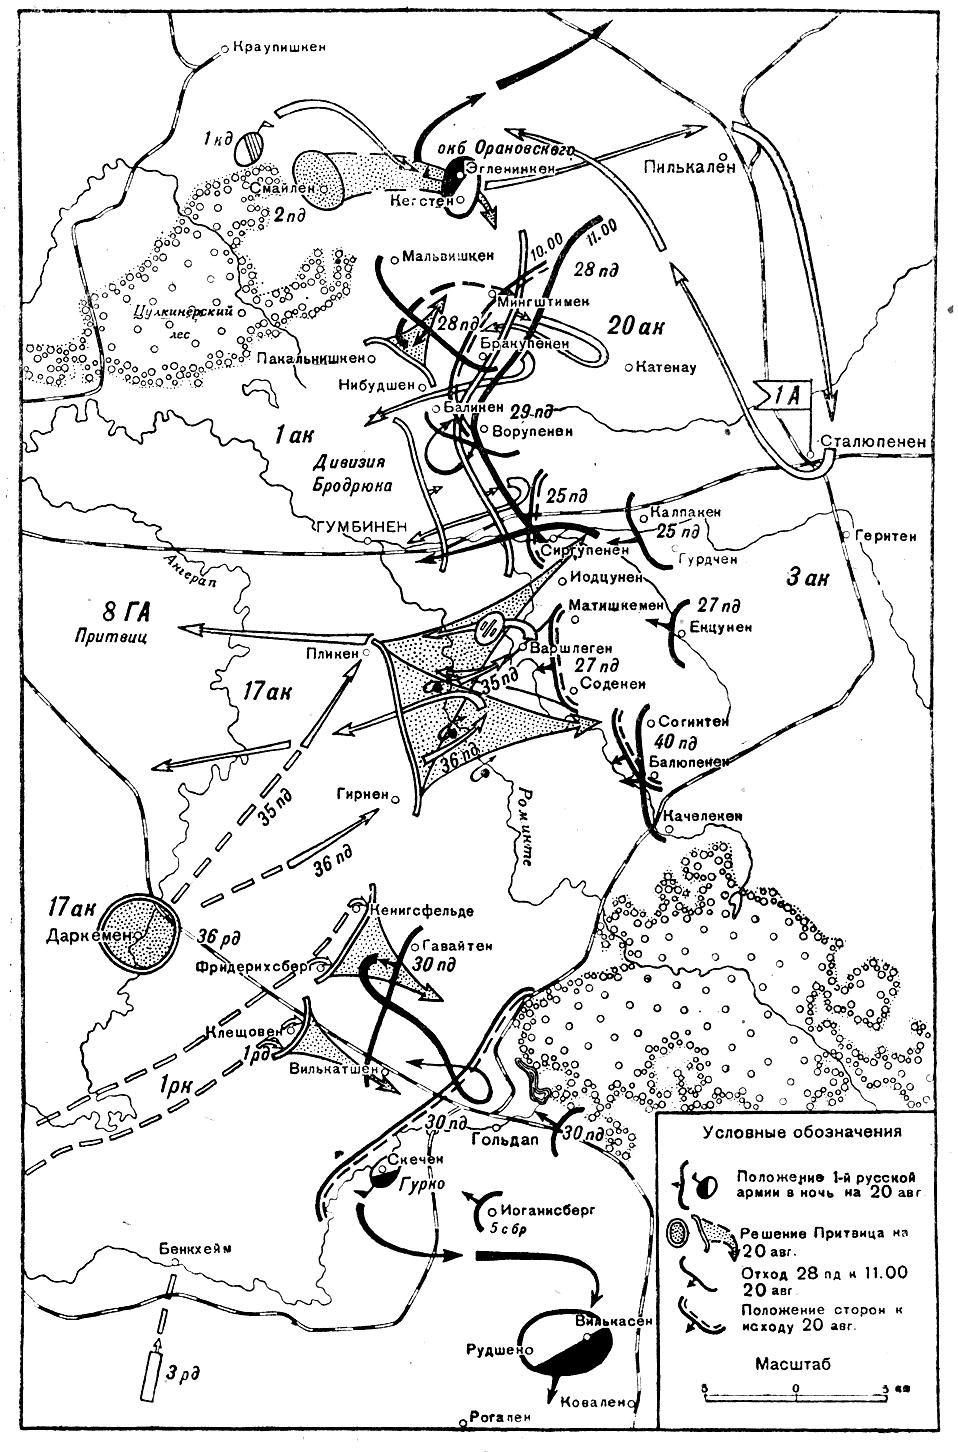 Гумбиннен - Гольдап. Сражение 20 августа 1914 г.